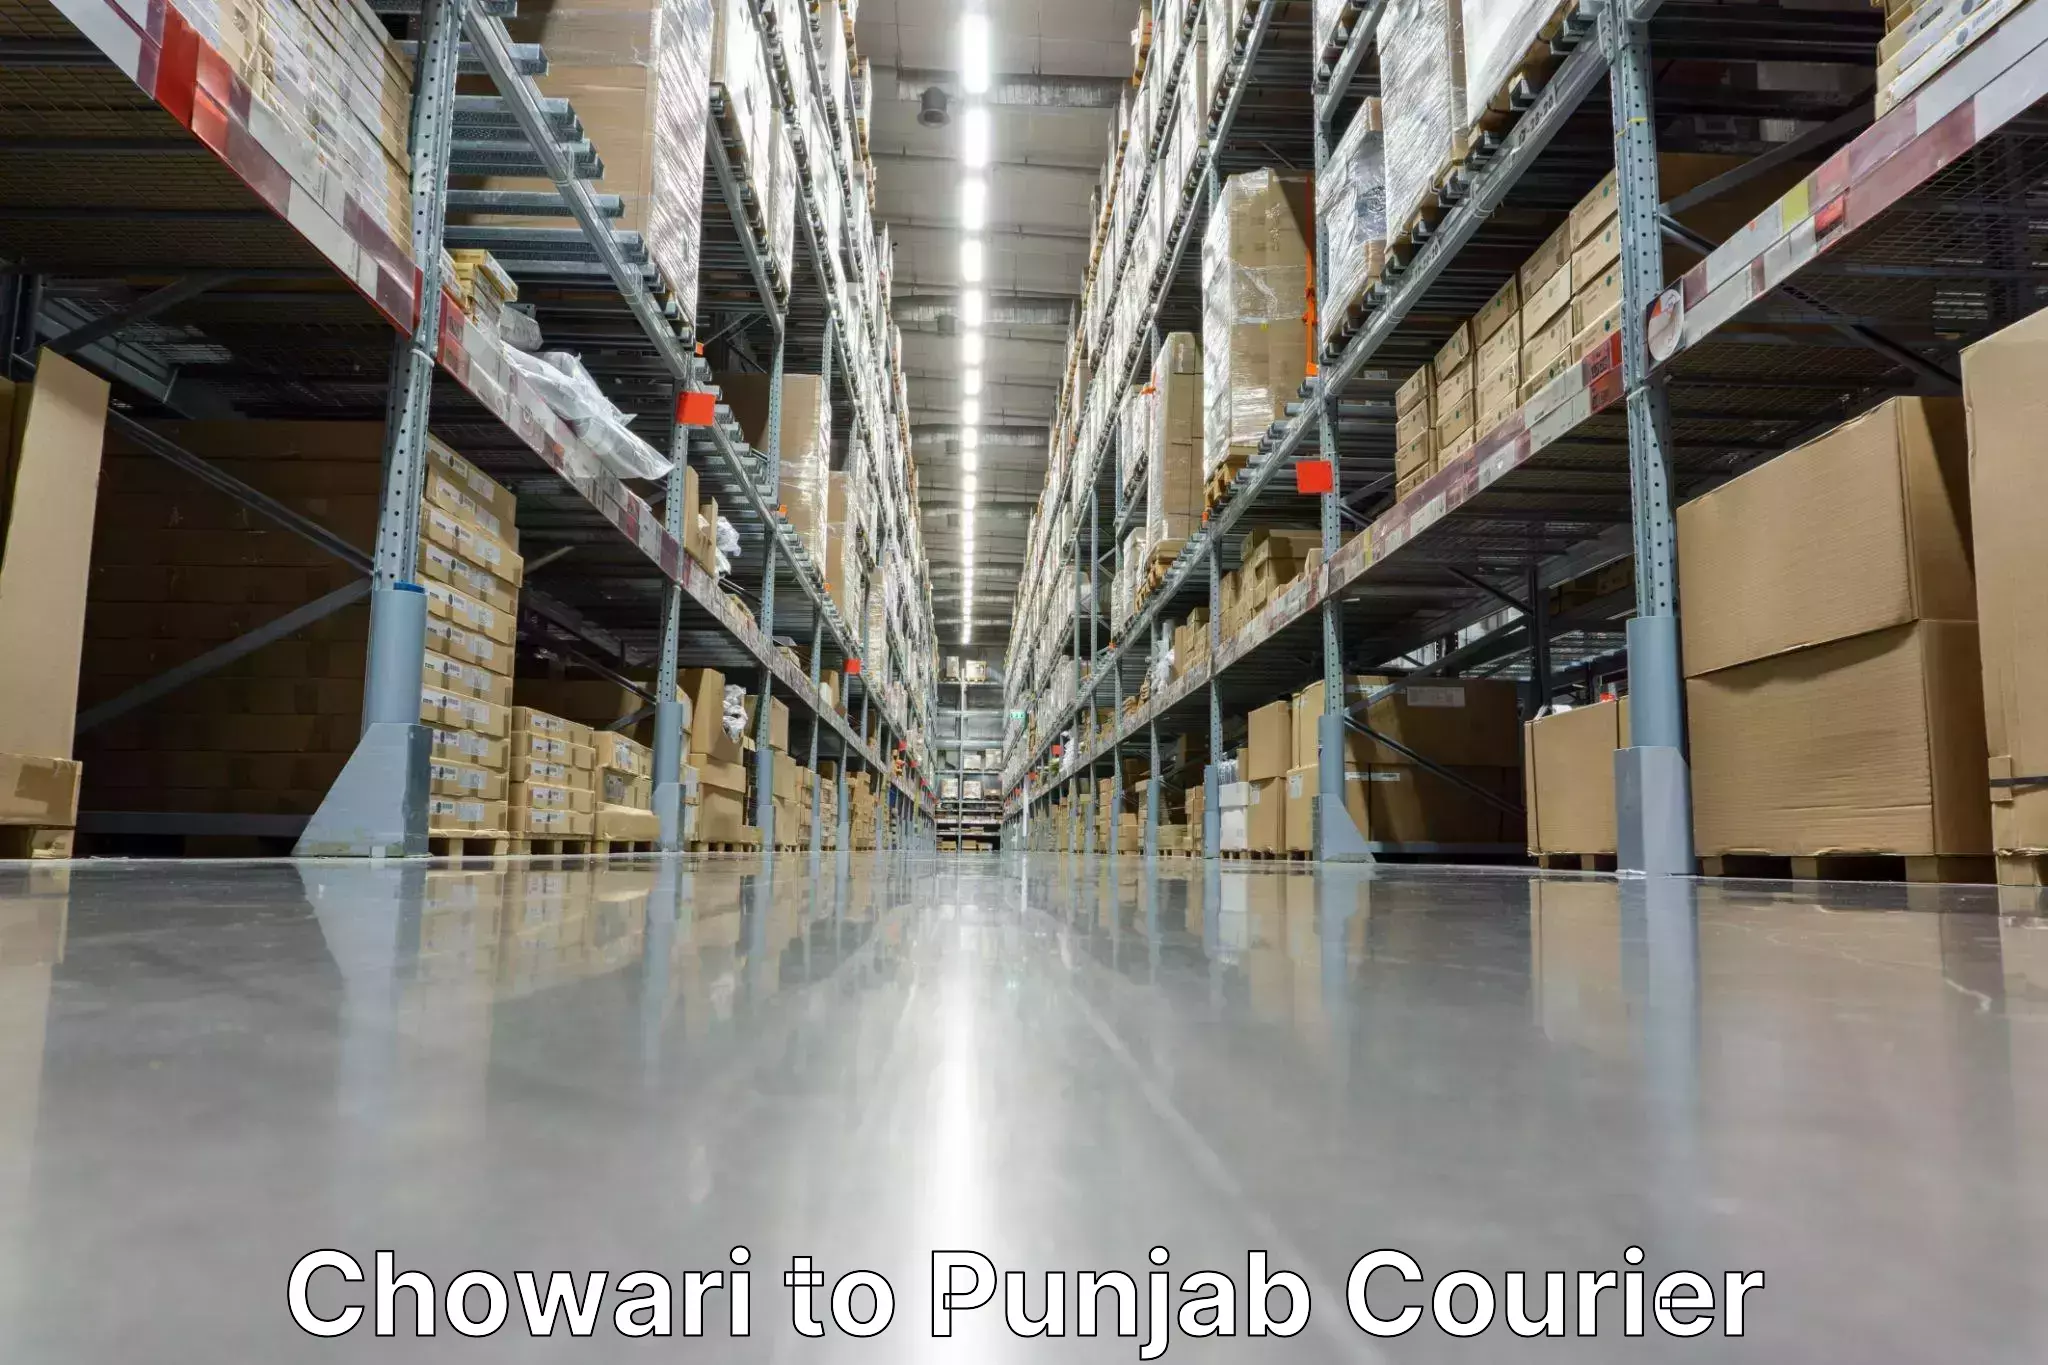 Pharmaceutical courier Chowari to Punjab